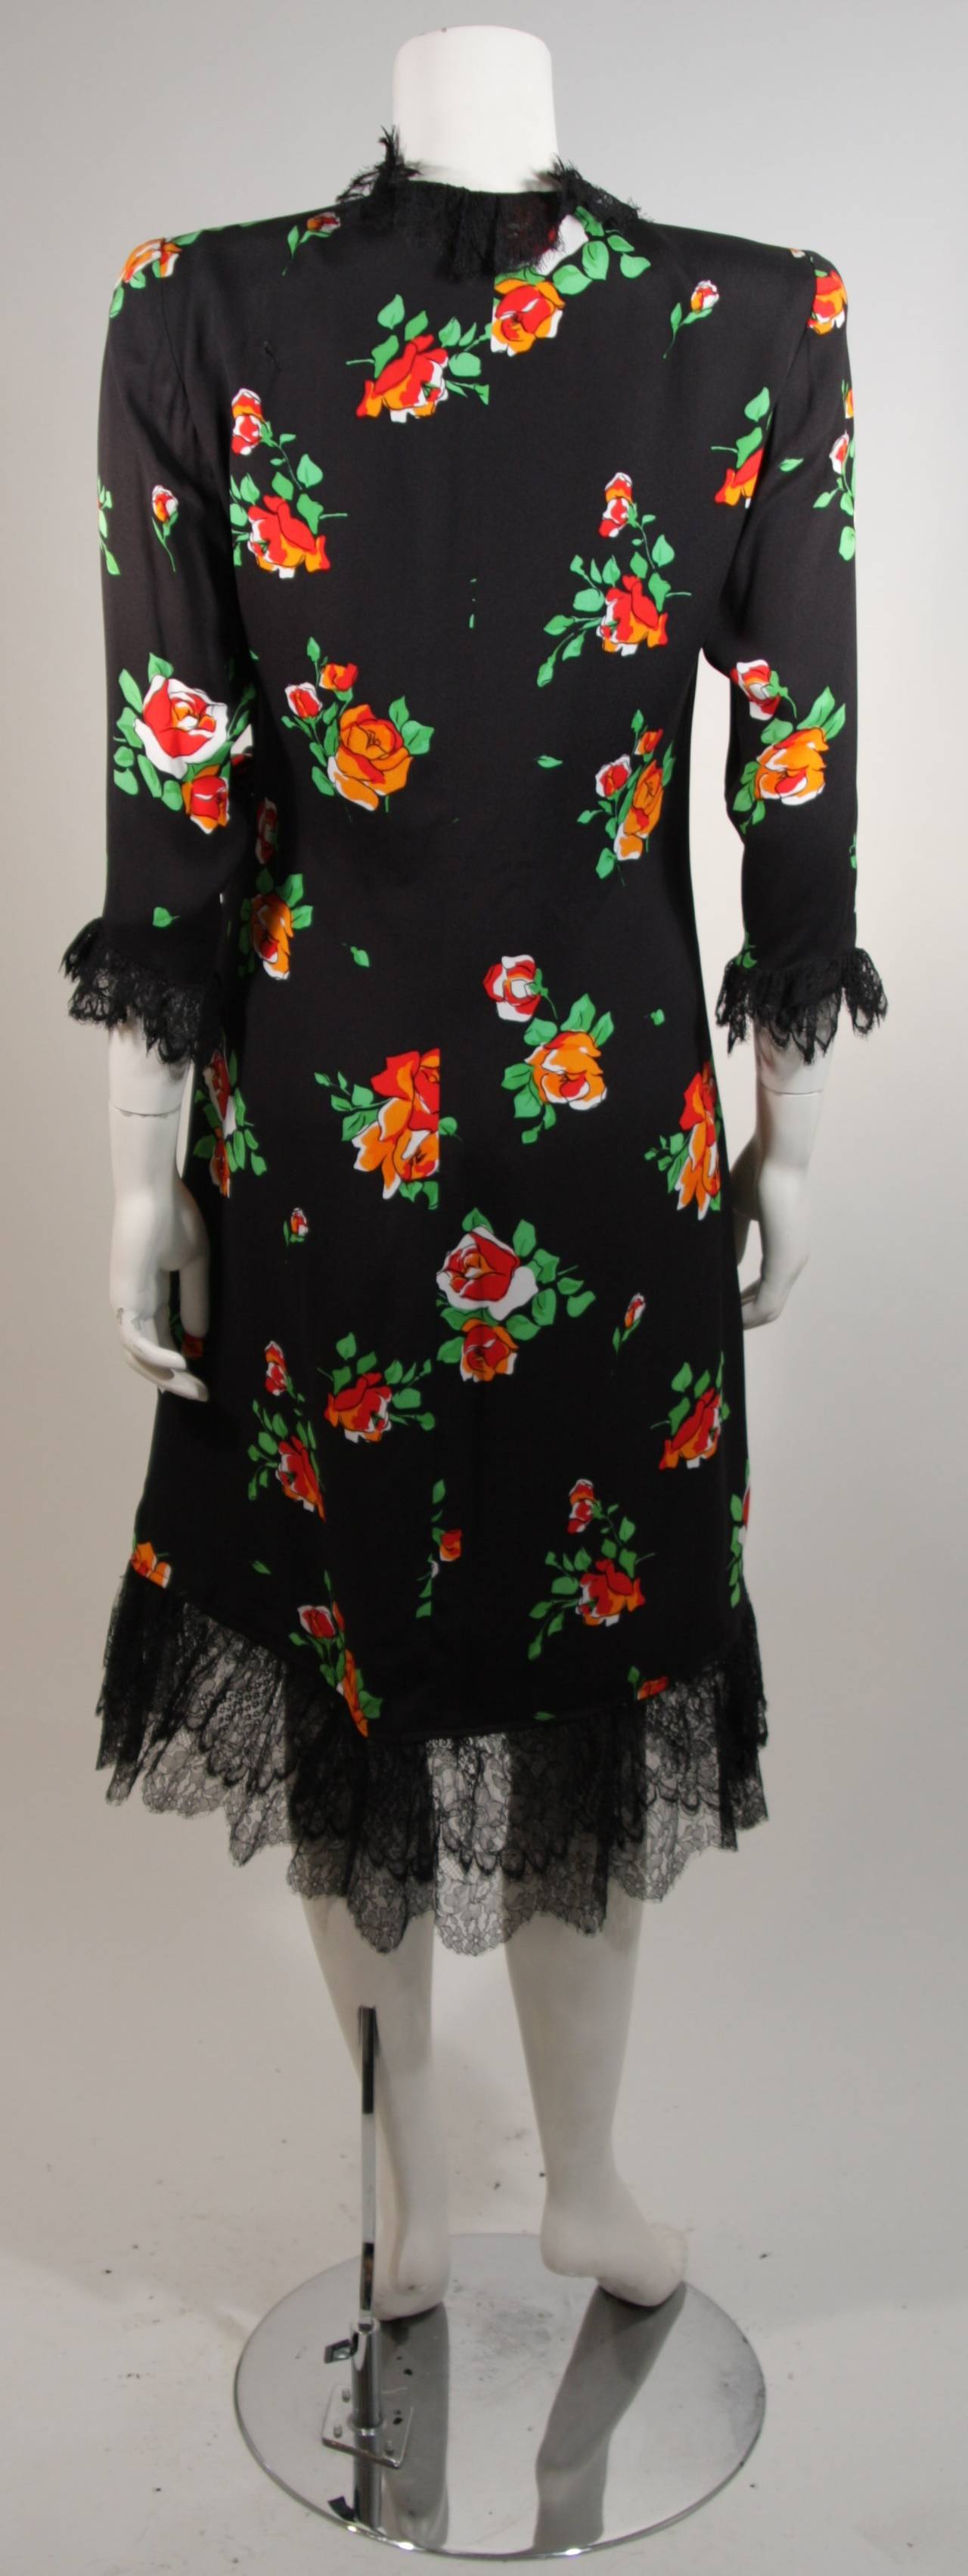 Saint Laurent Rive Gauche Black Crepe Floral Wrap Dress with Lace Trim Size 42 4